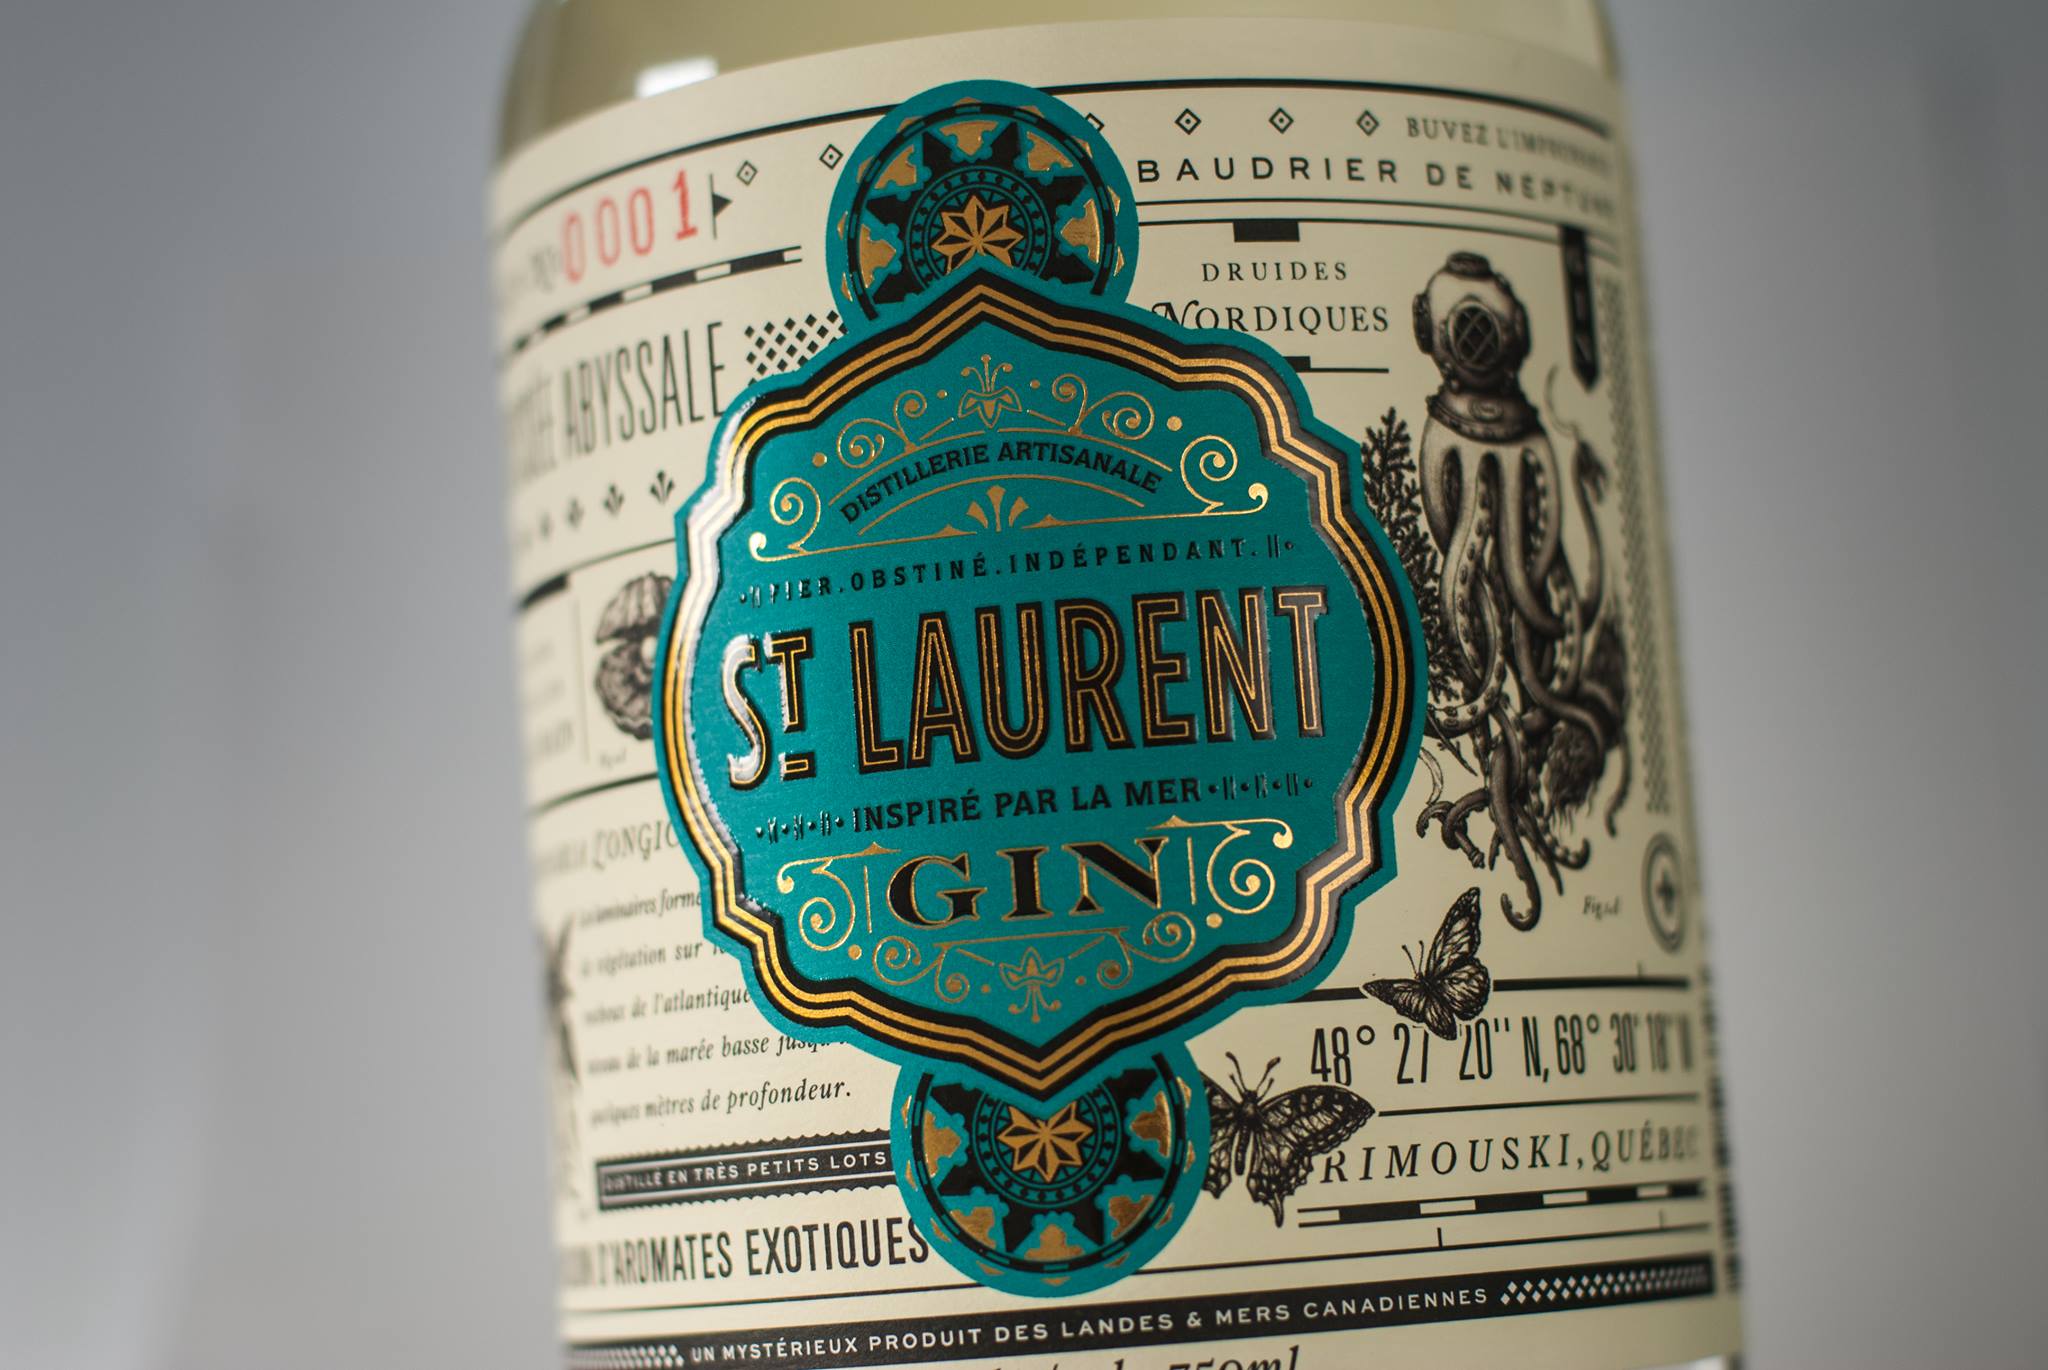 Bottle of St-Laurent's Gin